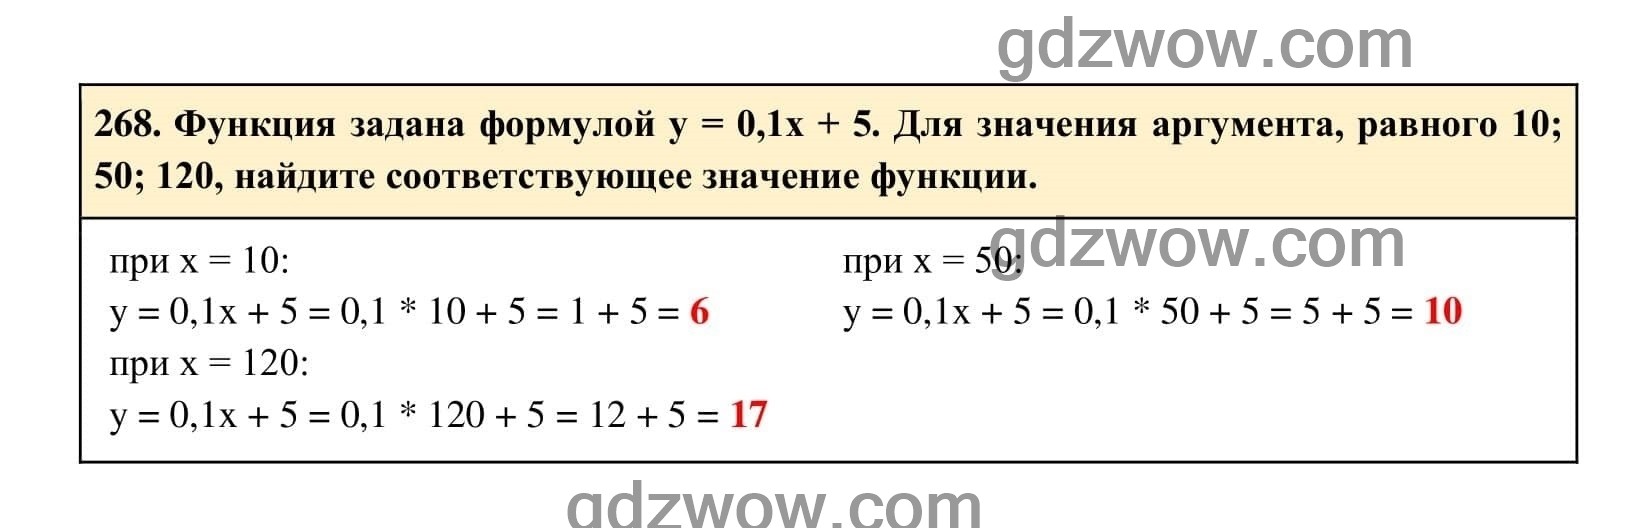 Упражнение 268 - ГДЗ по Алгебре 7 класс Учебник Макарычев (решебник) - GDZwow